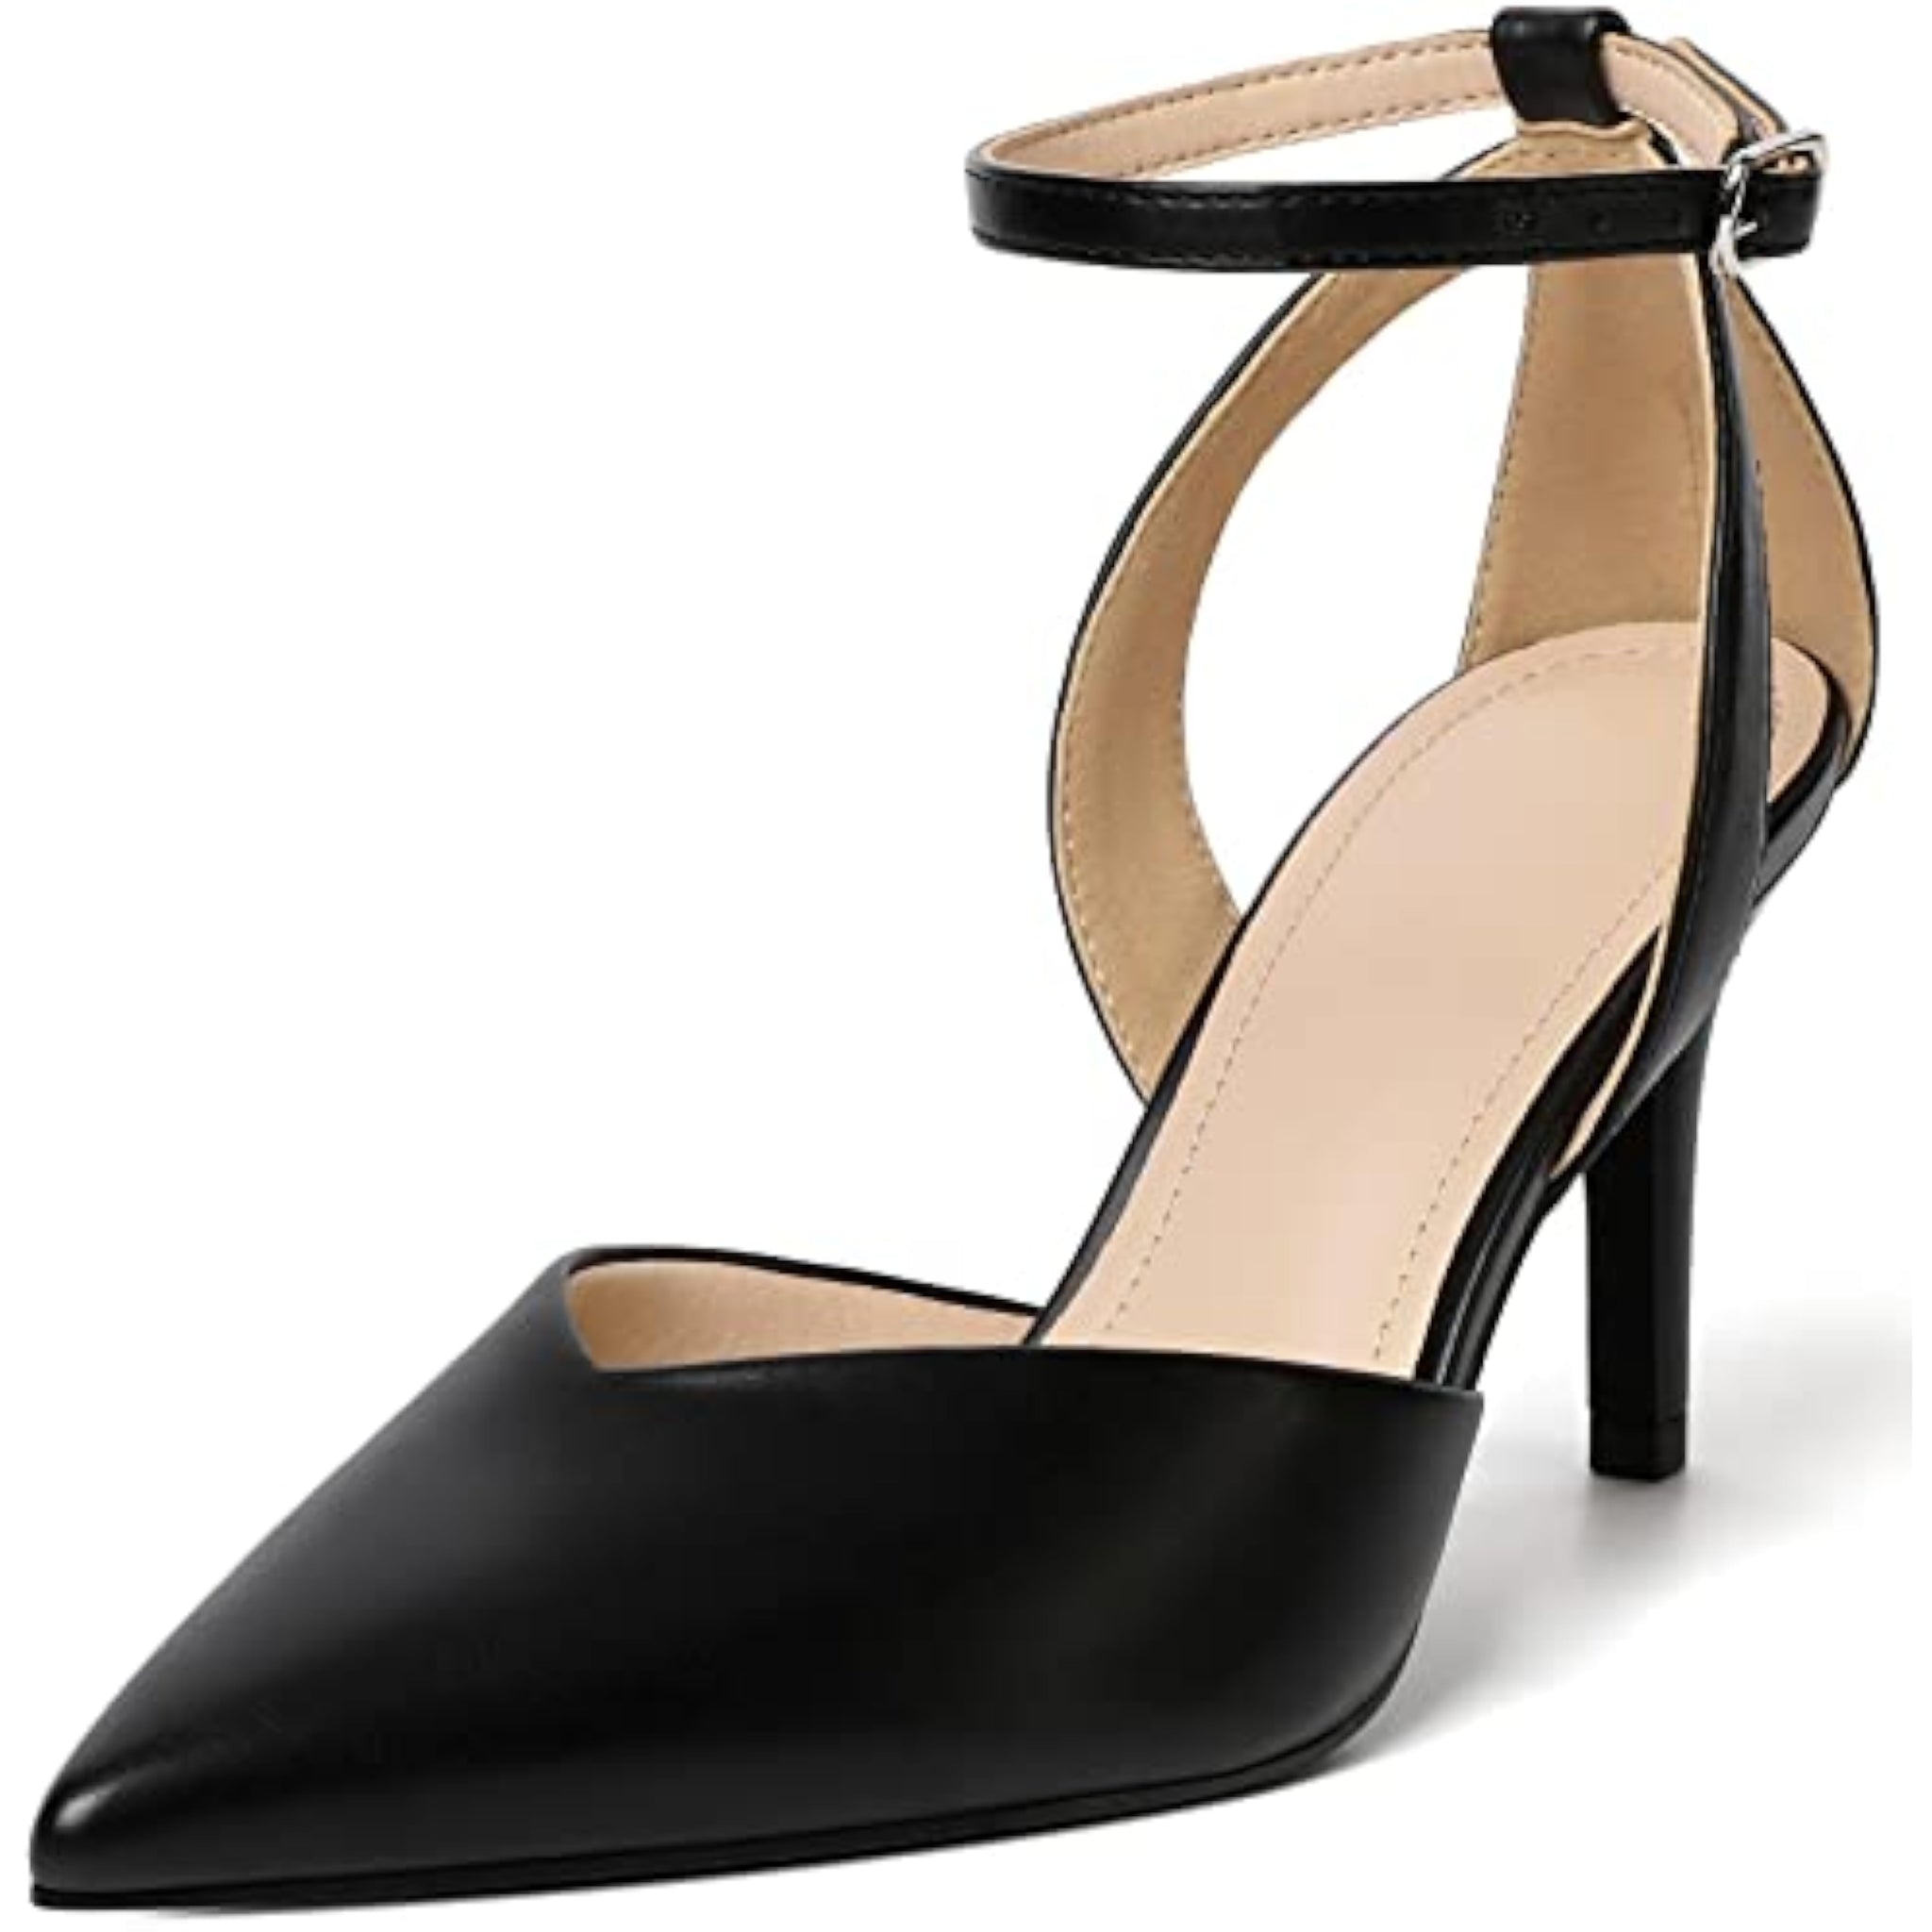 Simple Satin Evening Heels | Pointy toe heels, Heels, Evening heels